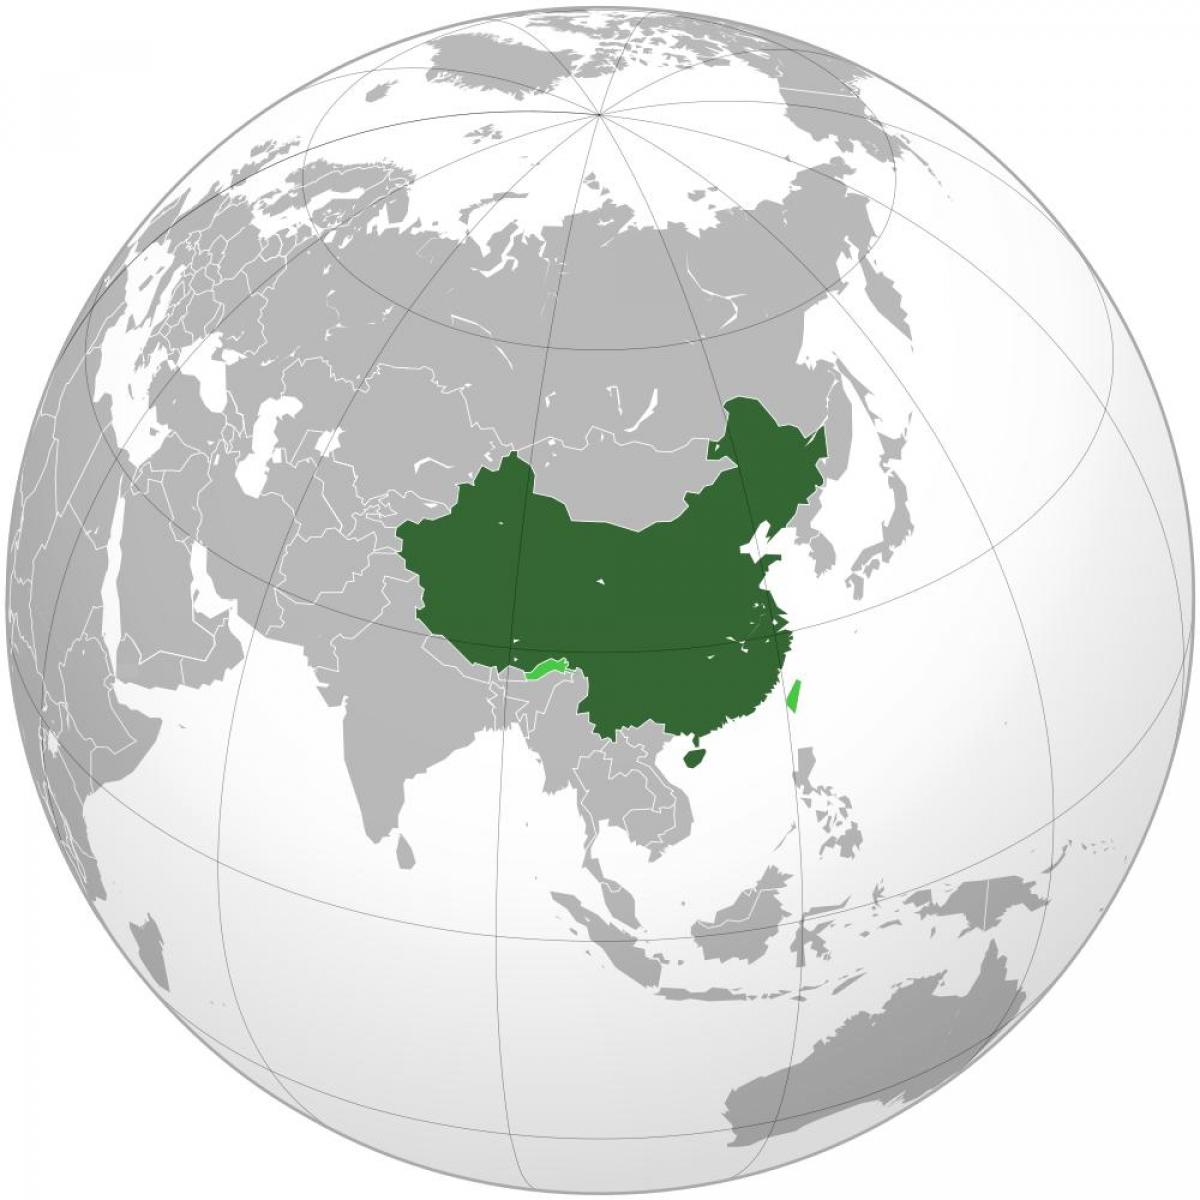 Kina karta svijeta